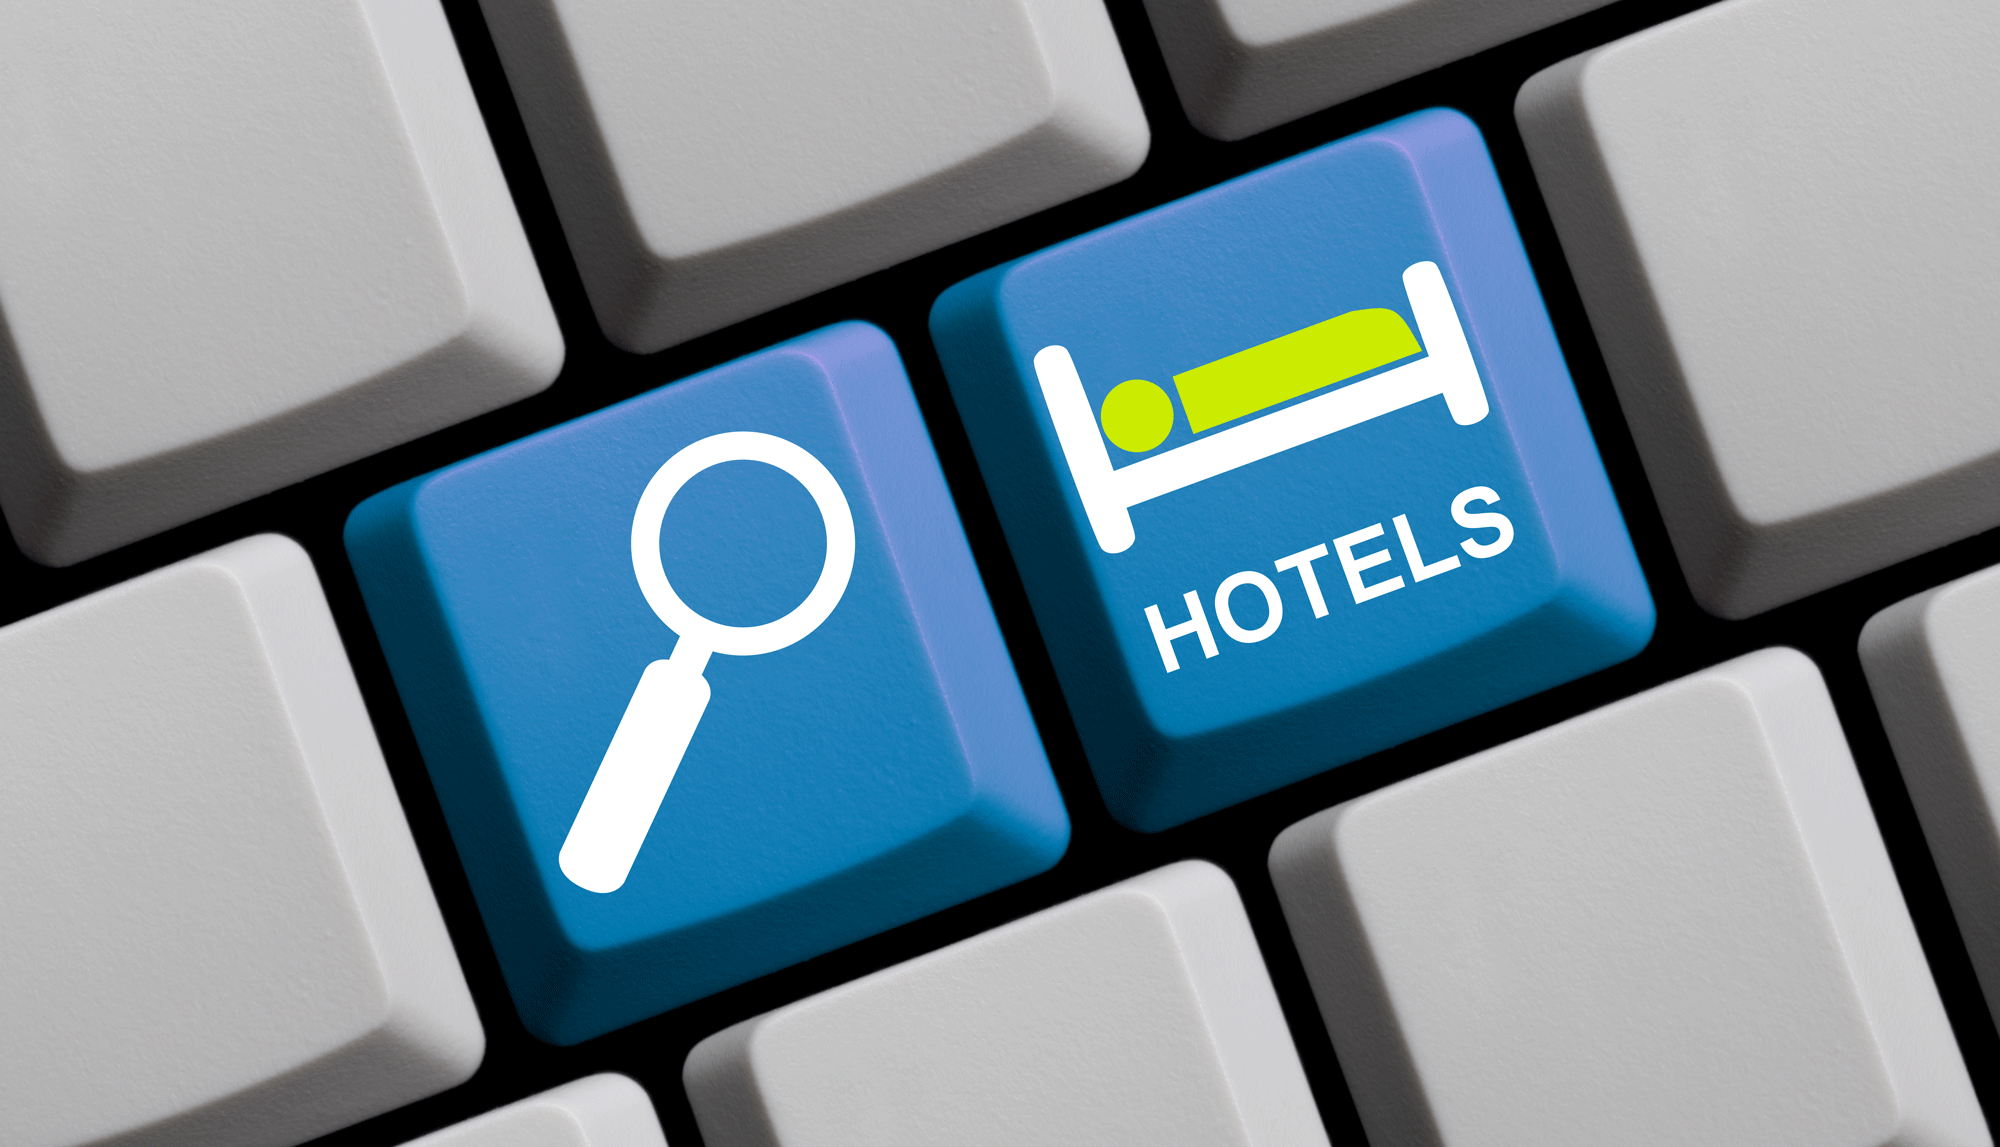 Le prix d'une nuit d'hôtel sur Internet ou dans une agence n'est pas toujours le même. [fotolia.com - kebox]